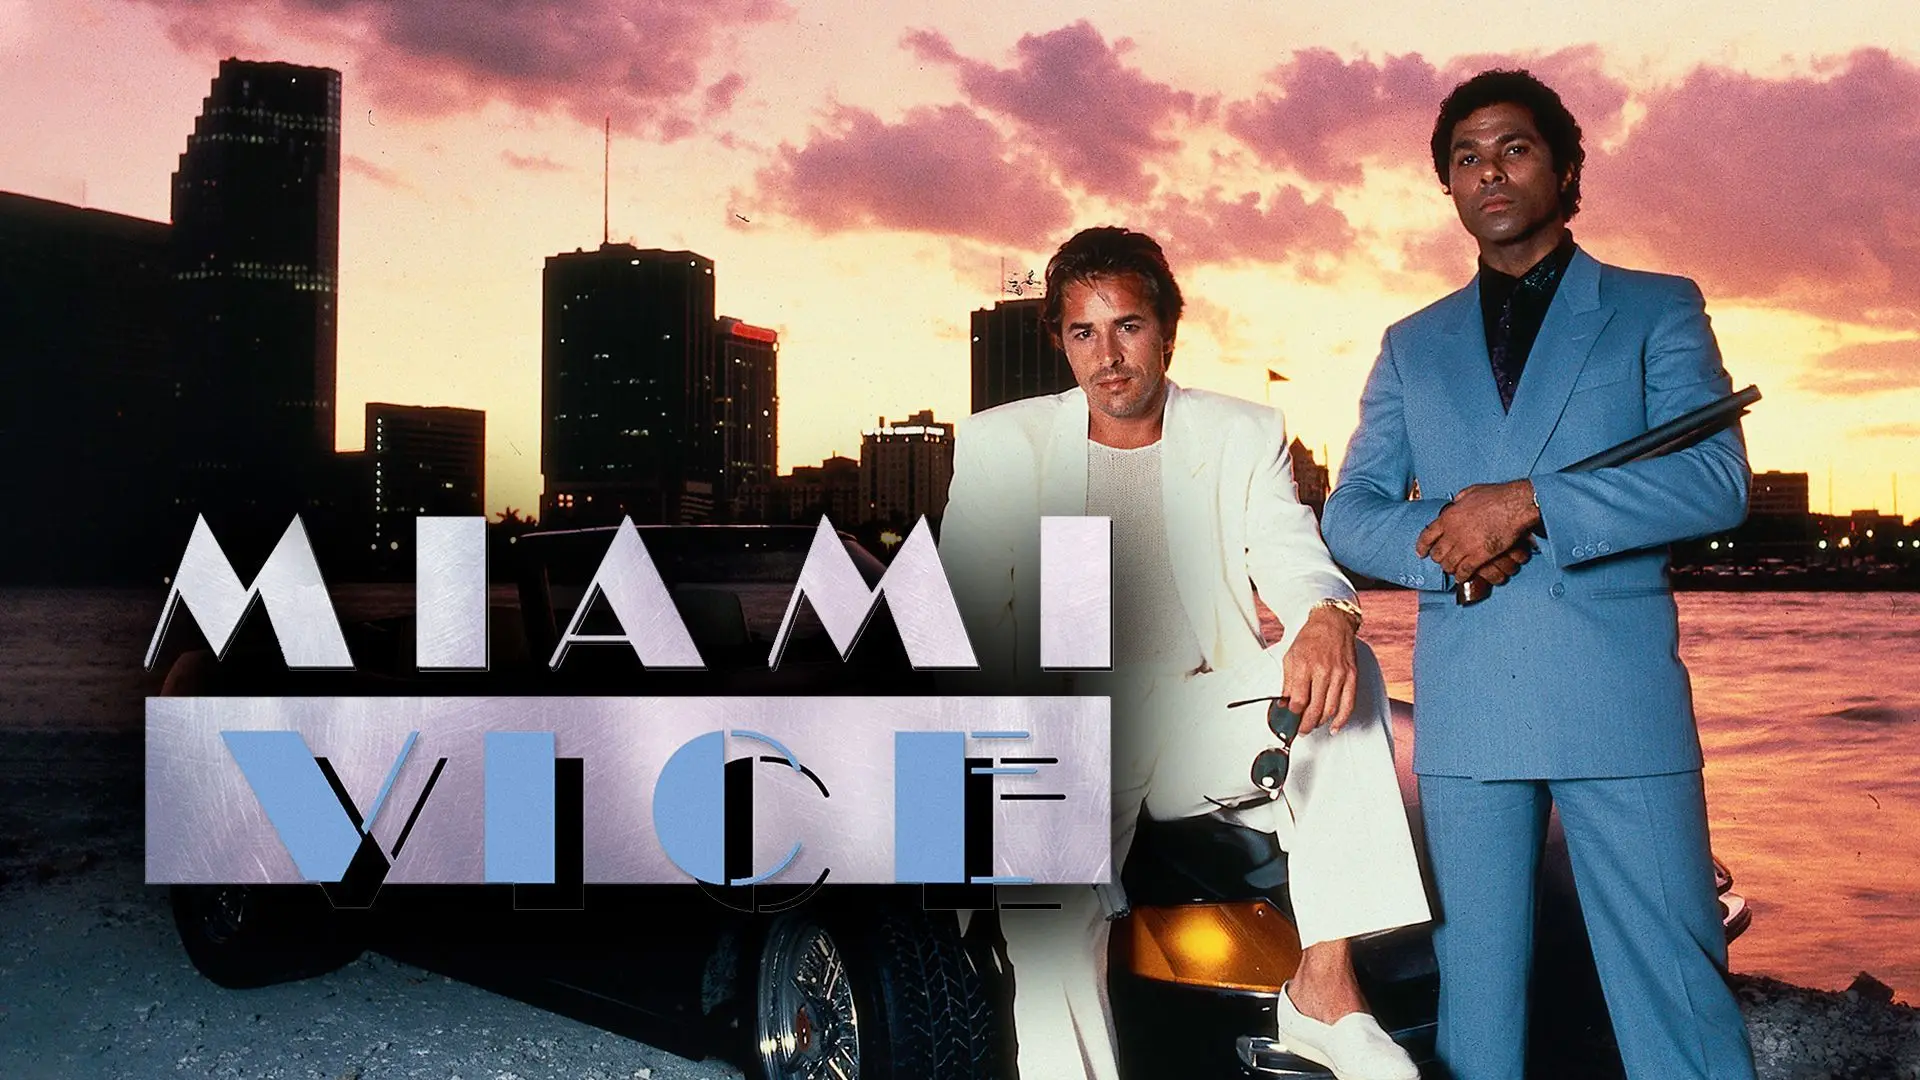 Miami Vice (ТВ) Фильм Печать на холсте Плакат для декора гостиной Домашняя настенная картина 0